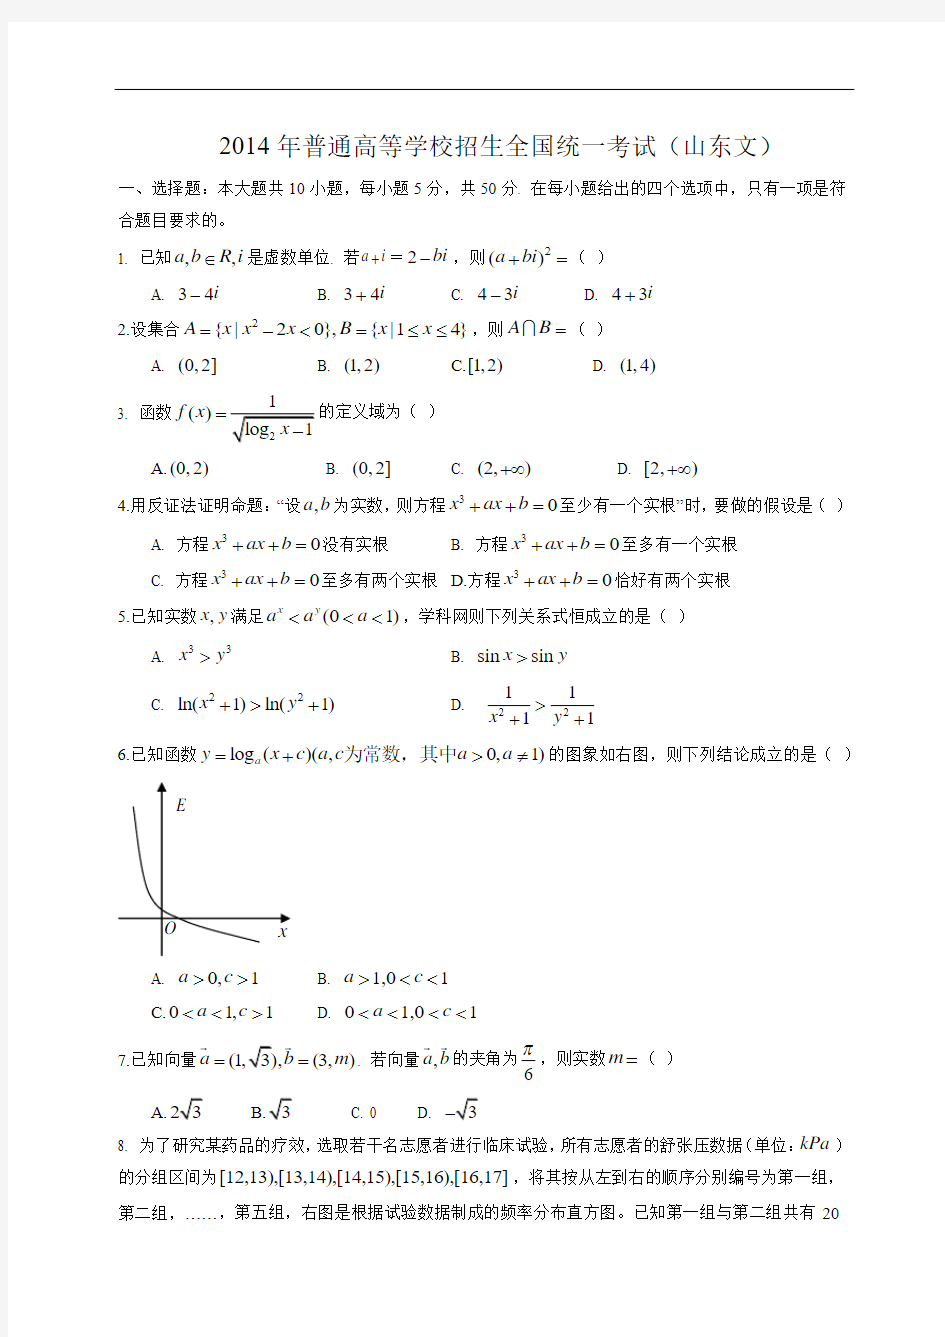 2014年-高考试卷及答案解析-数学-文科-山东(精校版)